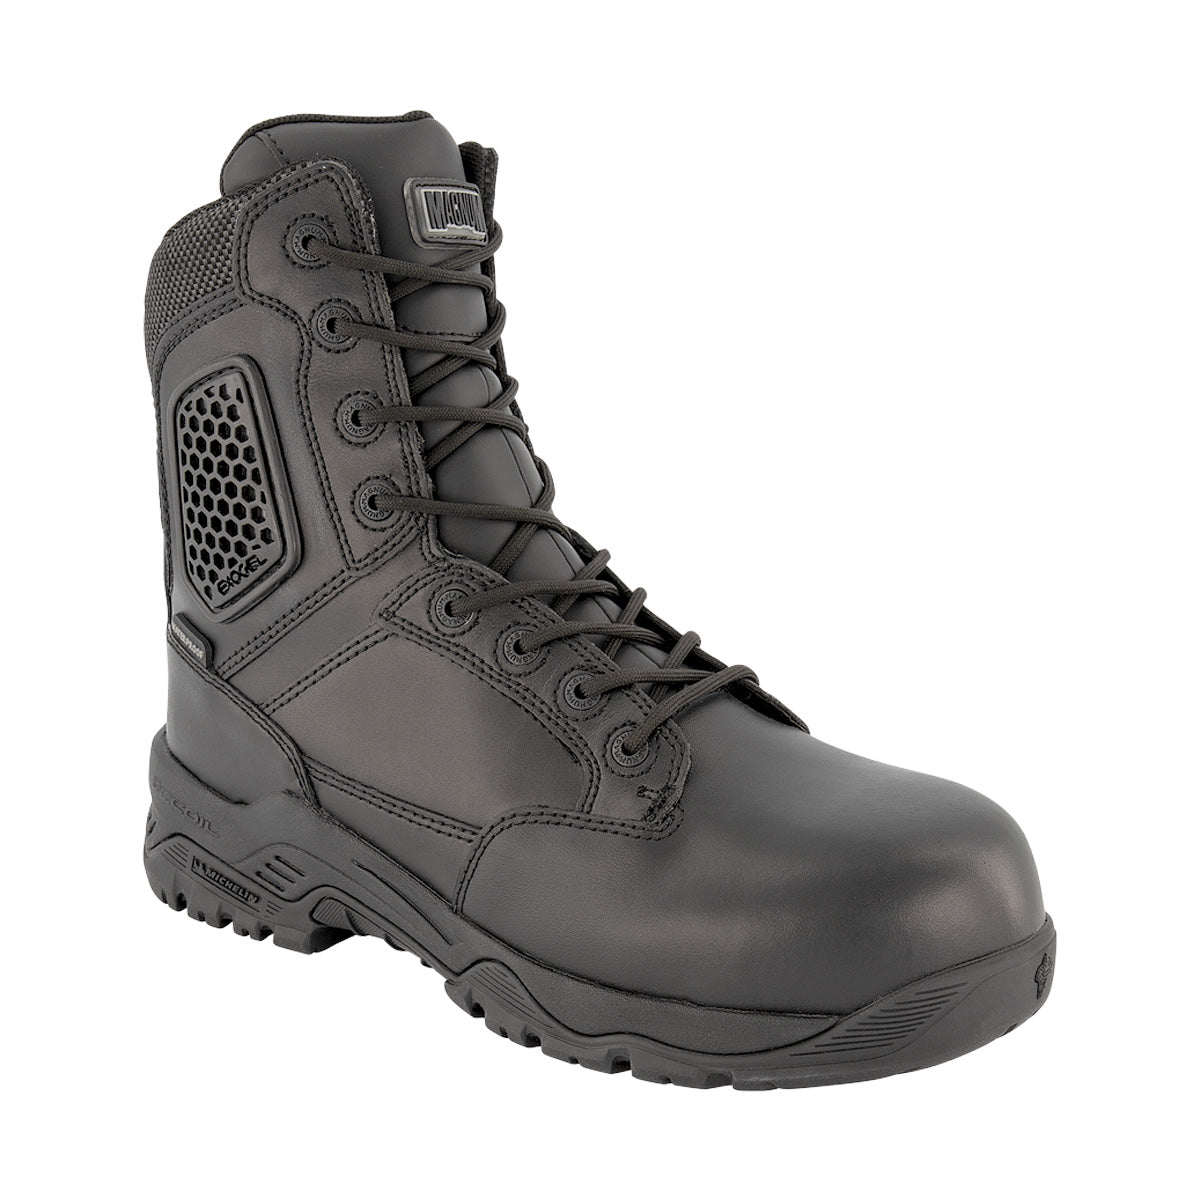 Magnum Strike Force 8.0 Leather Side-Zip Waterproof Boot Black Footwear Magnum Footwear 5.0 US Regular Tactical Gear Supplier Tactical Distributors Australia